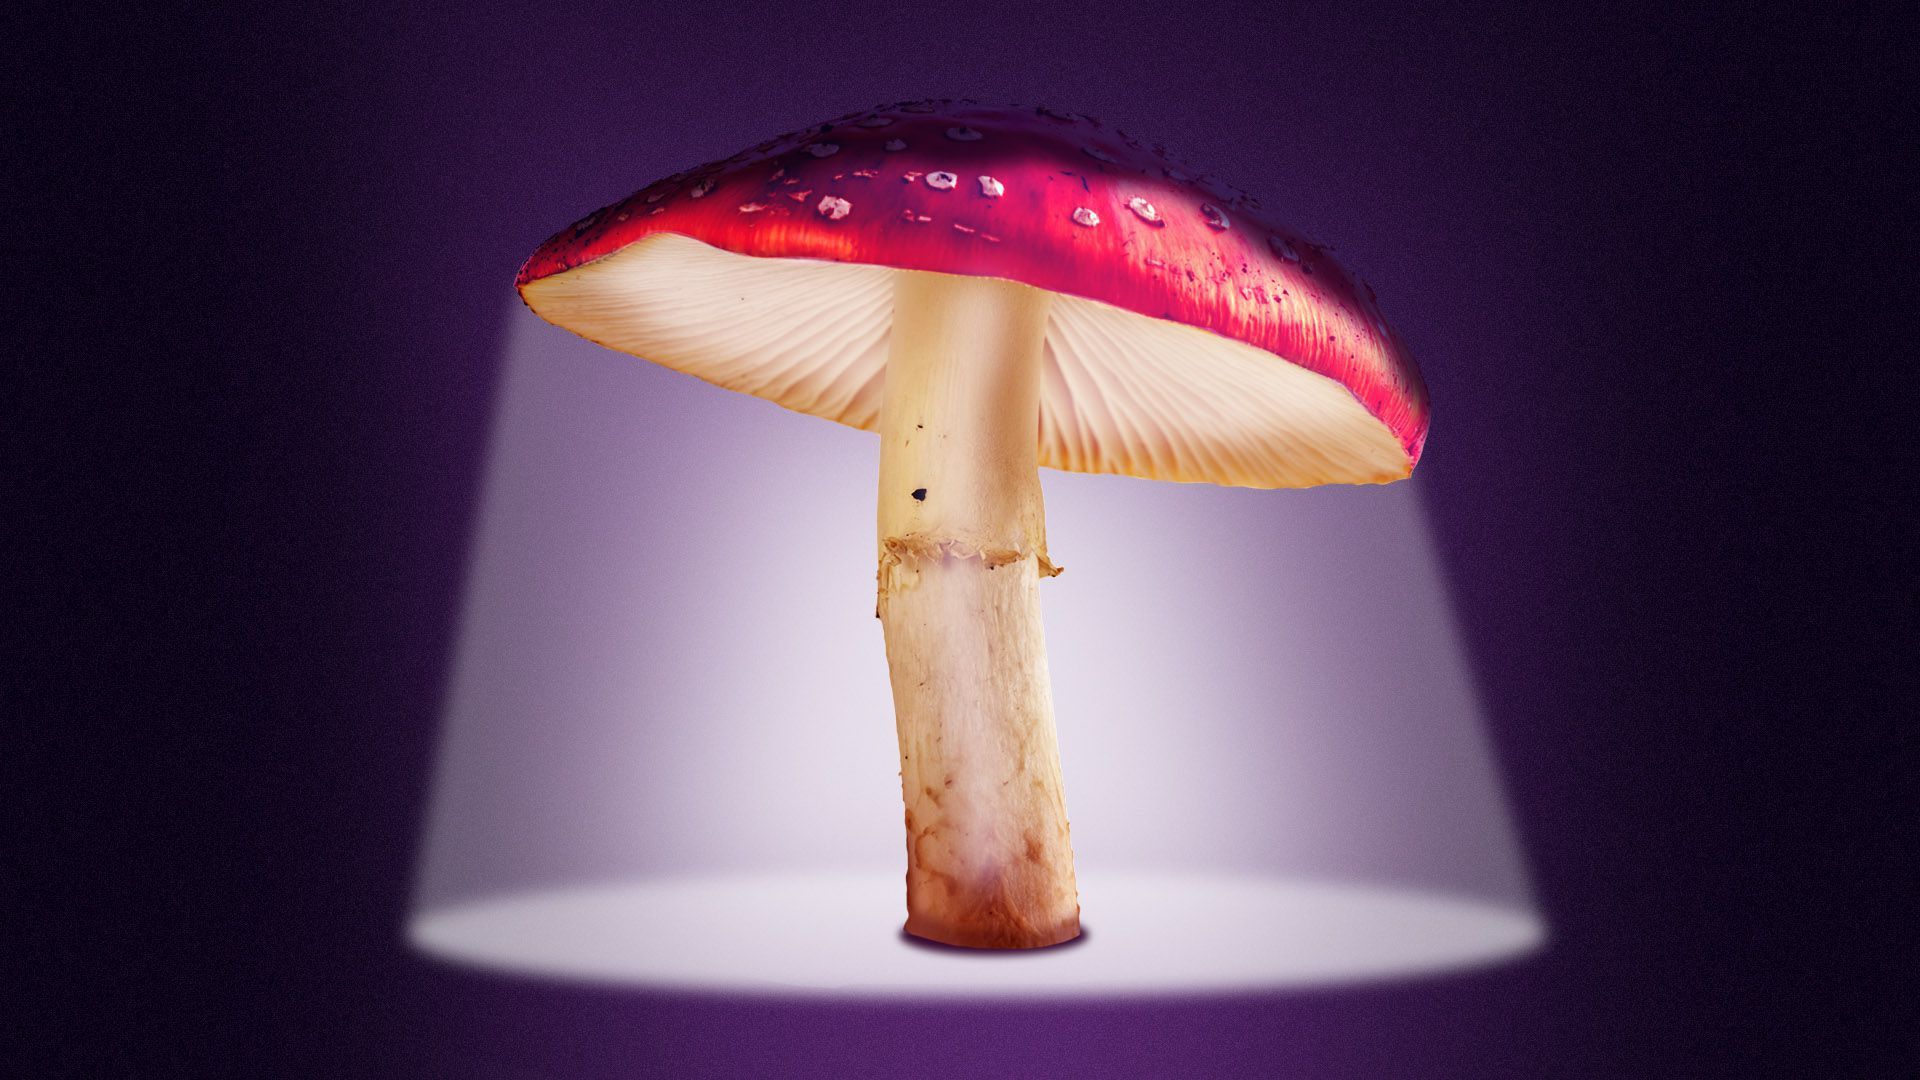 An illustration of a mushroom under a spotlight.